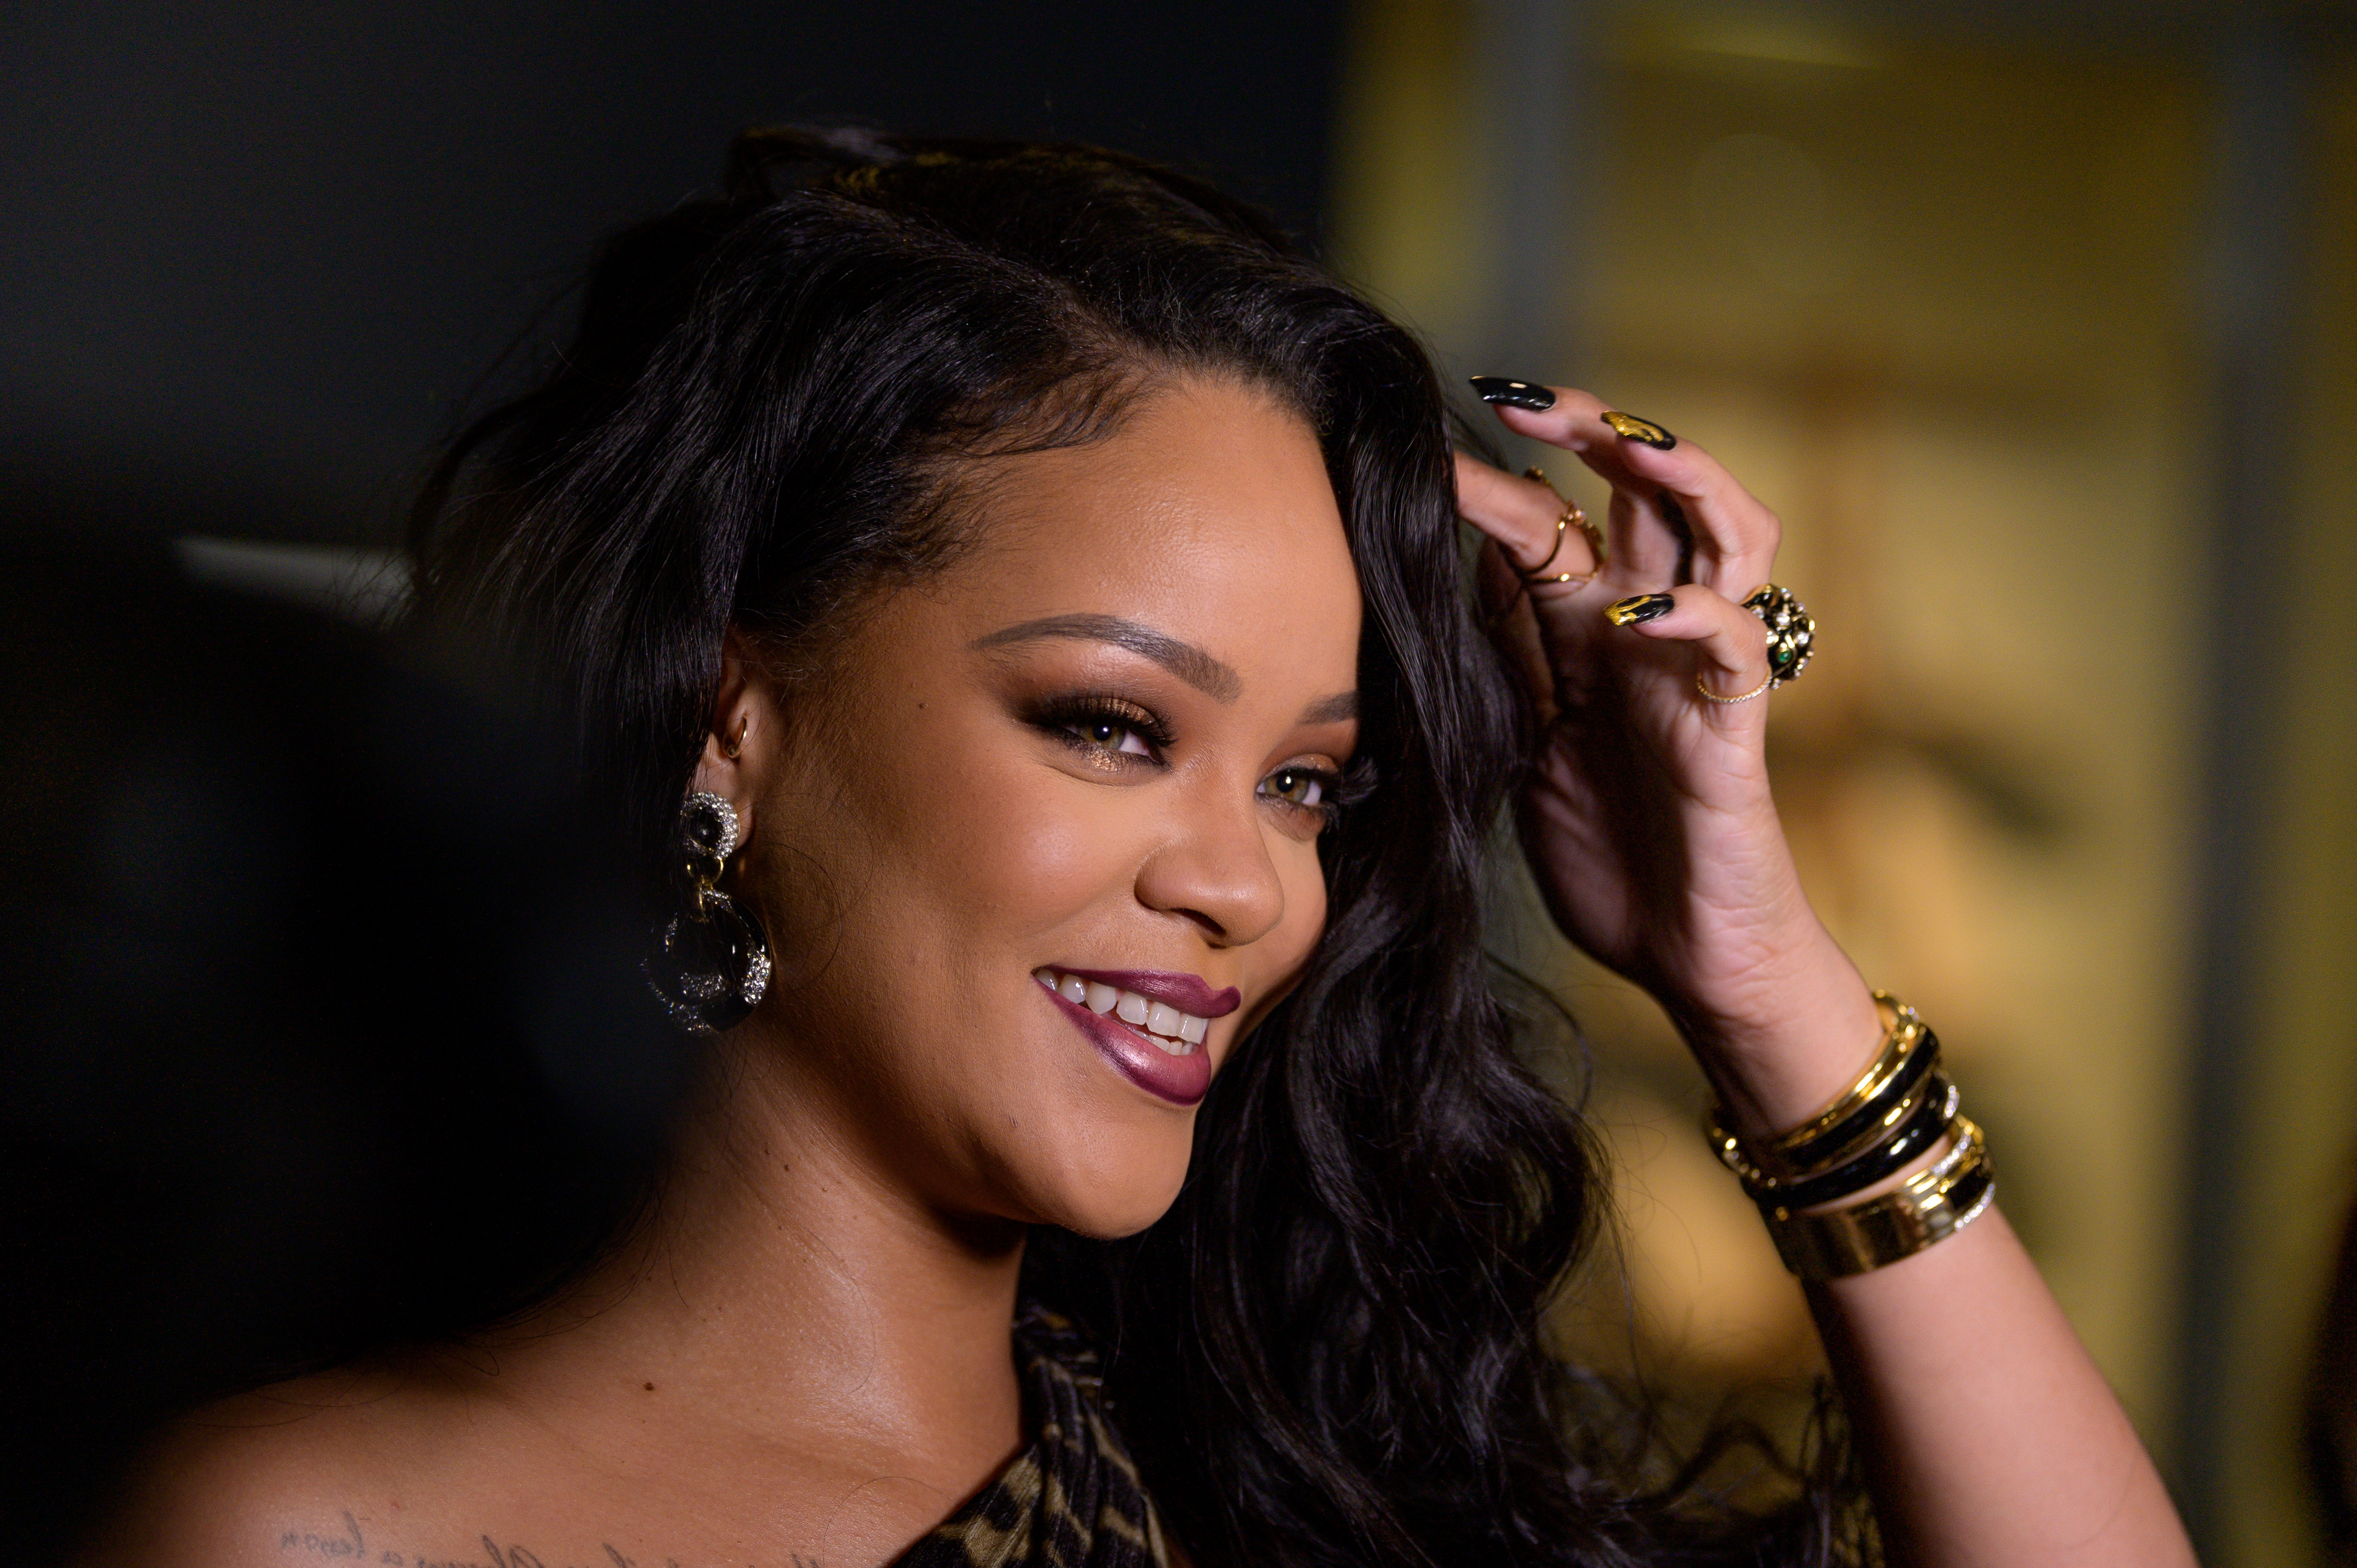 Rihanna Calls Vogue Writer Who Winged Her Interview “A Badass”